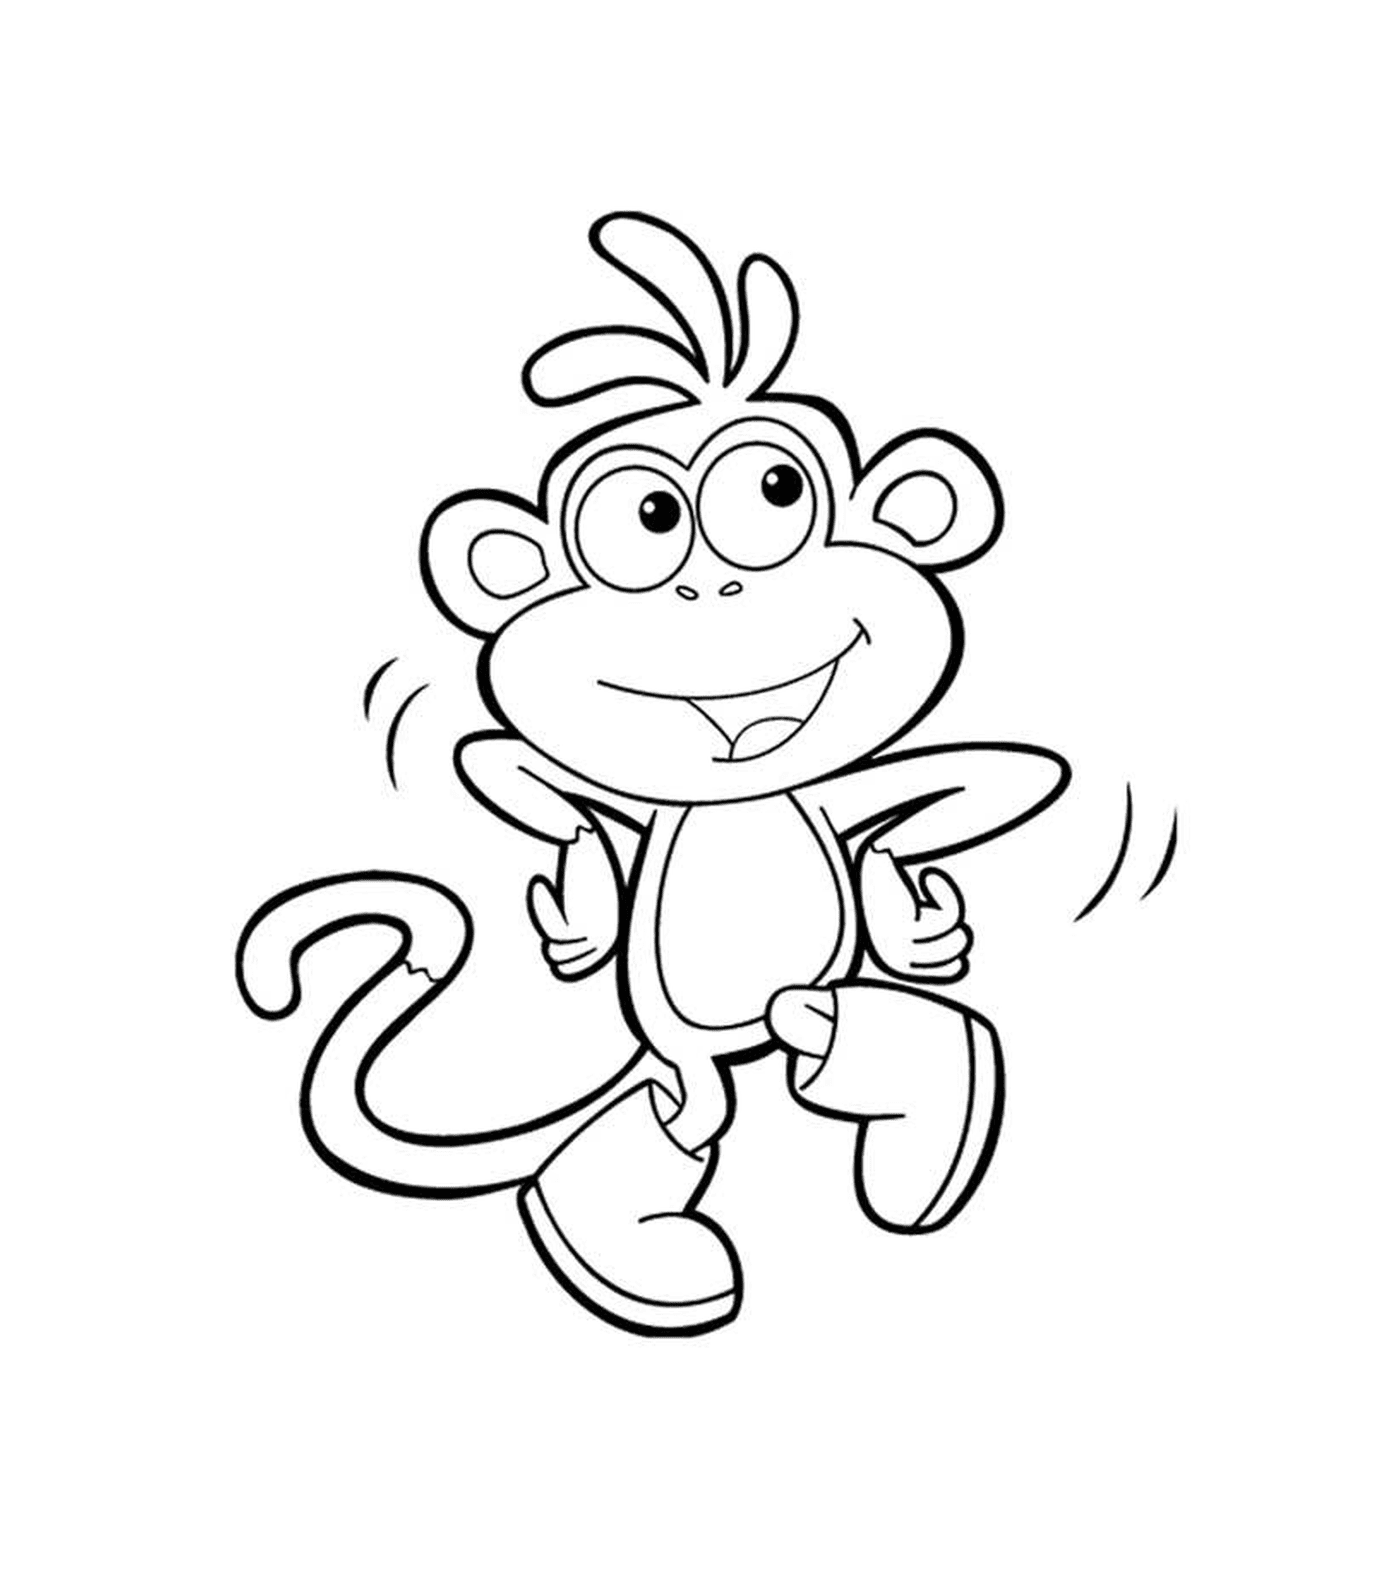  El mono de Dora el explorador salta en el aire 